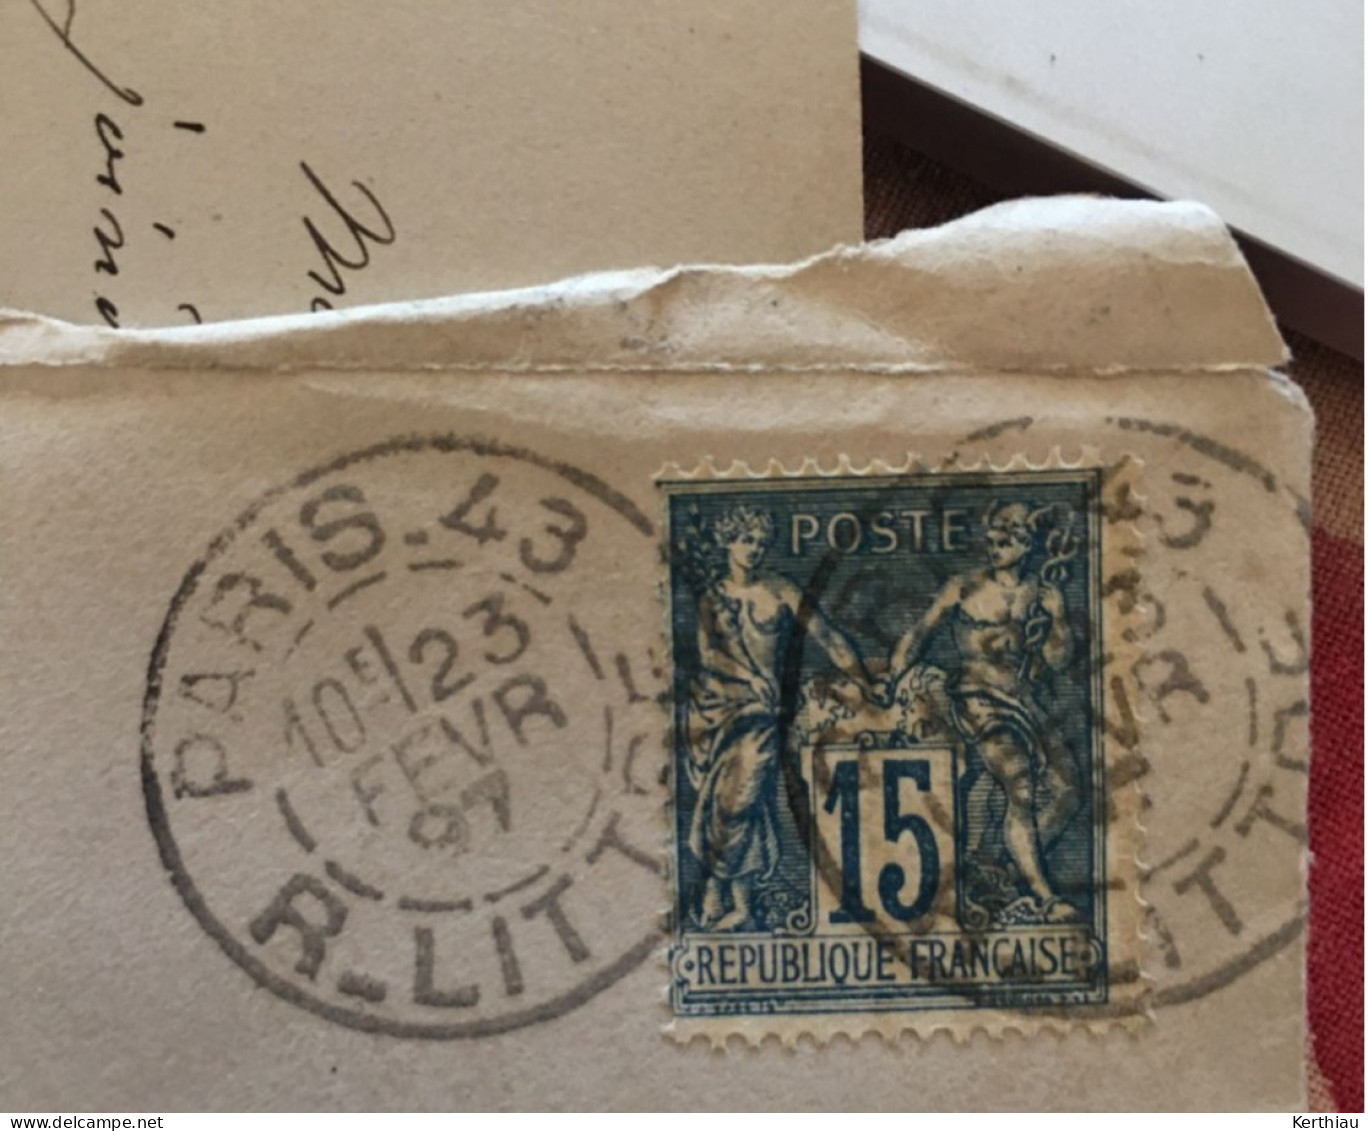 10 Lettres, Enveloppes Et Oblitérations, Différentes, De Bureaux Parisiens. Destinataire Connu, Une Signature Notable - 1877-1920: Semi-Moderne